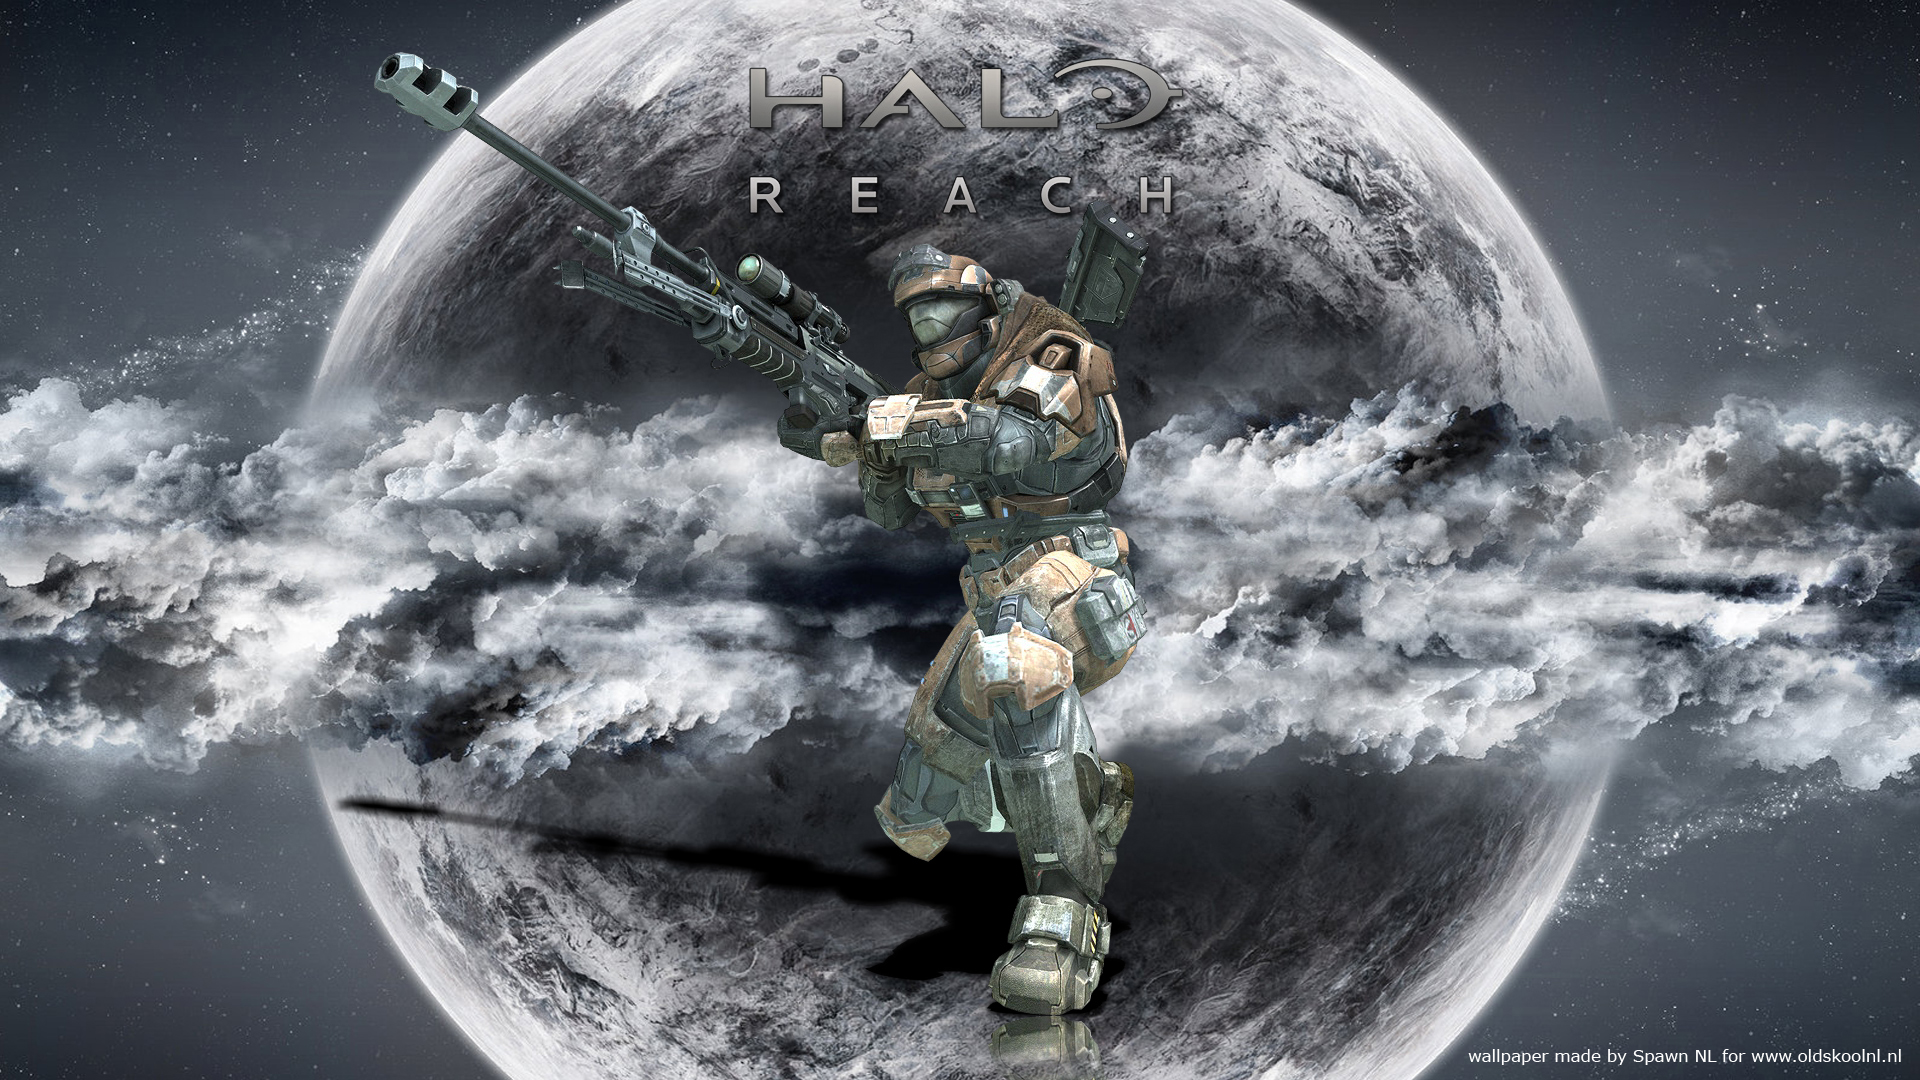 Halo Reach by Spawn